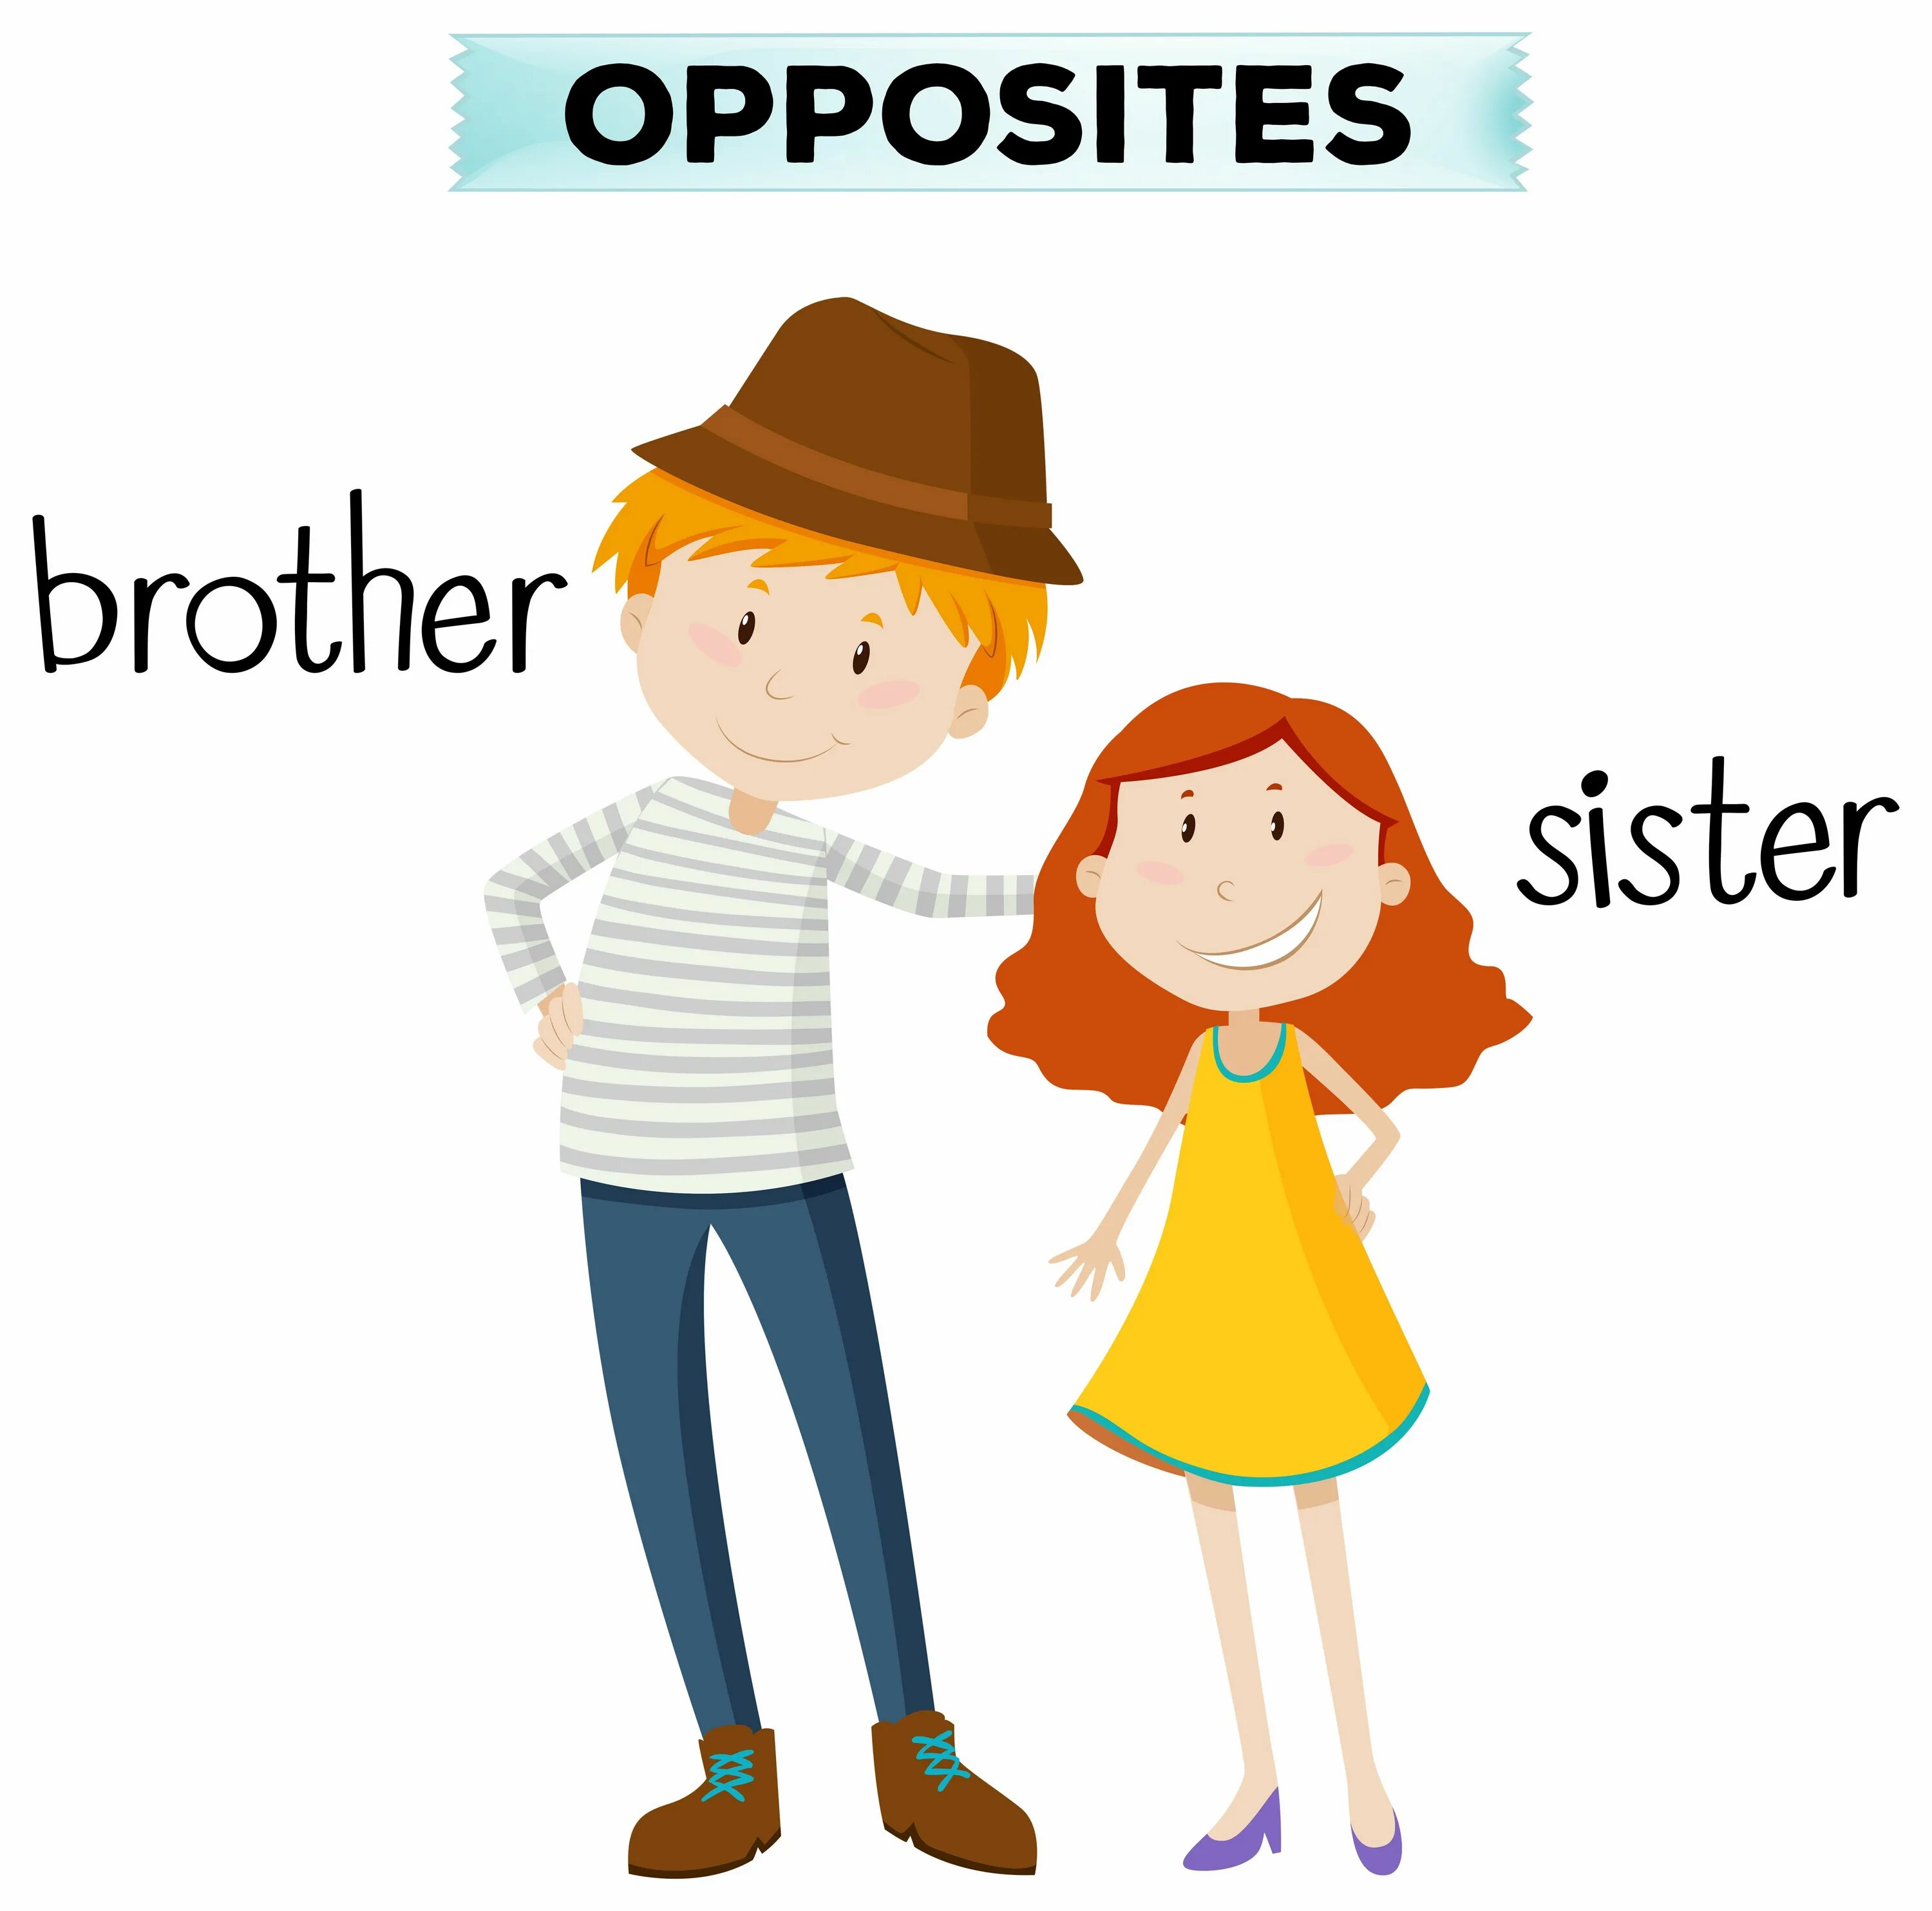 Sister по английски. Брат и сестра на английском. Брат и сестра мультяшные. Sister карточки для детей. Братишка и сестра вектор.